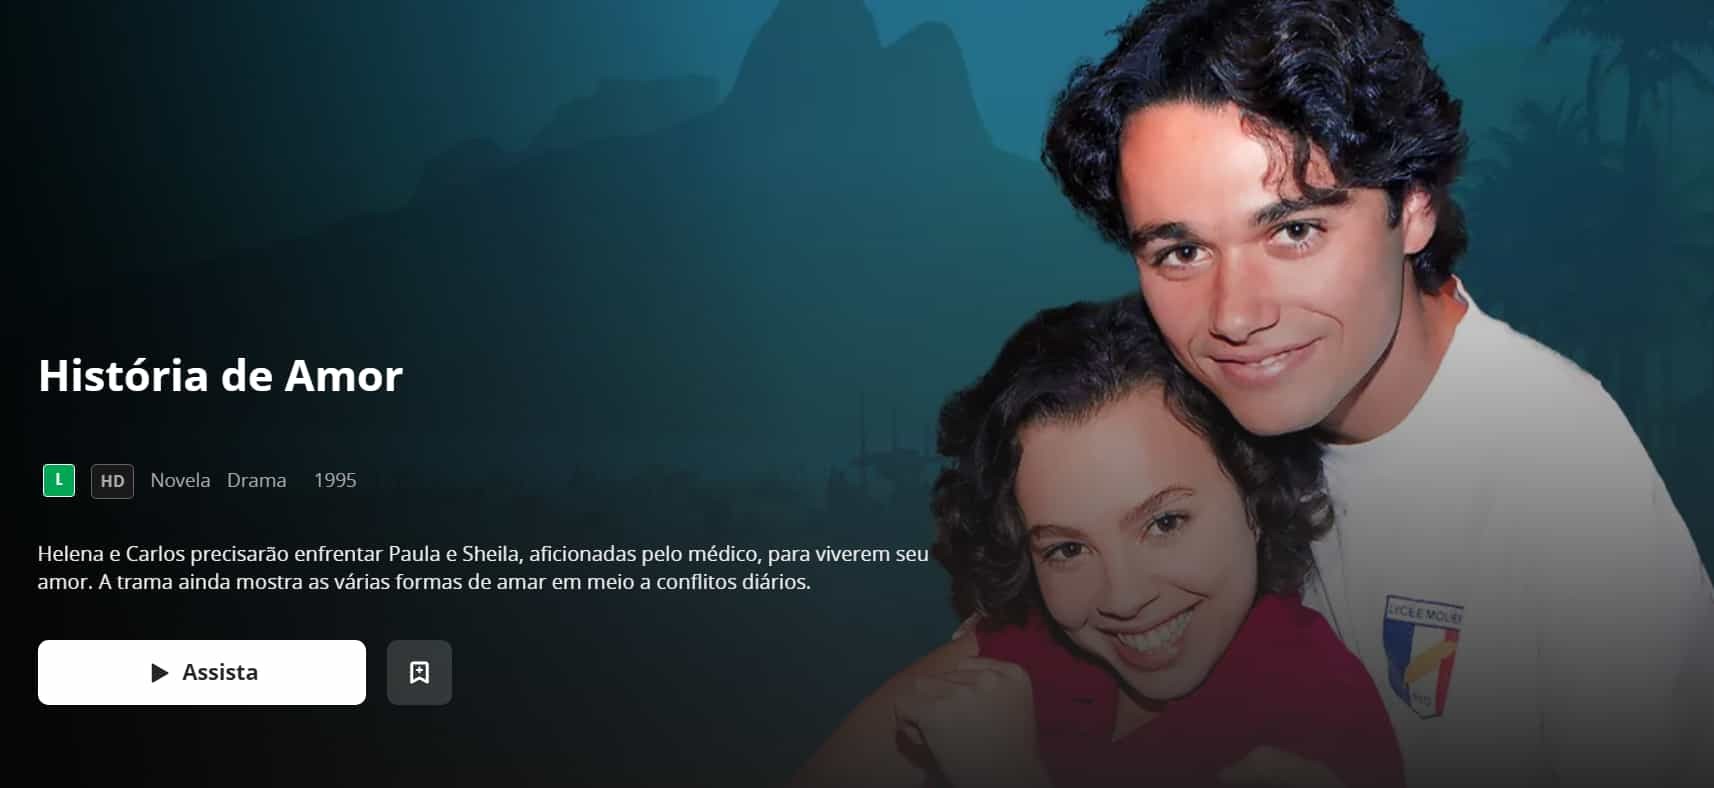 História de Amor no Globoplay